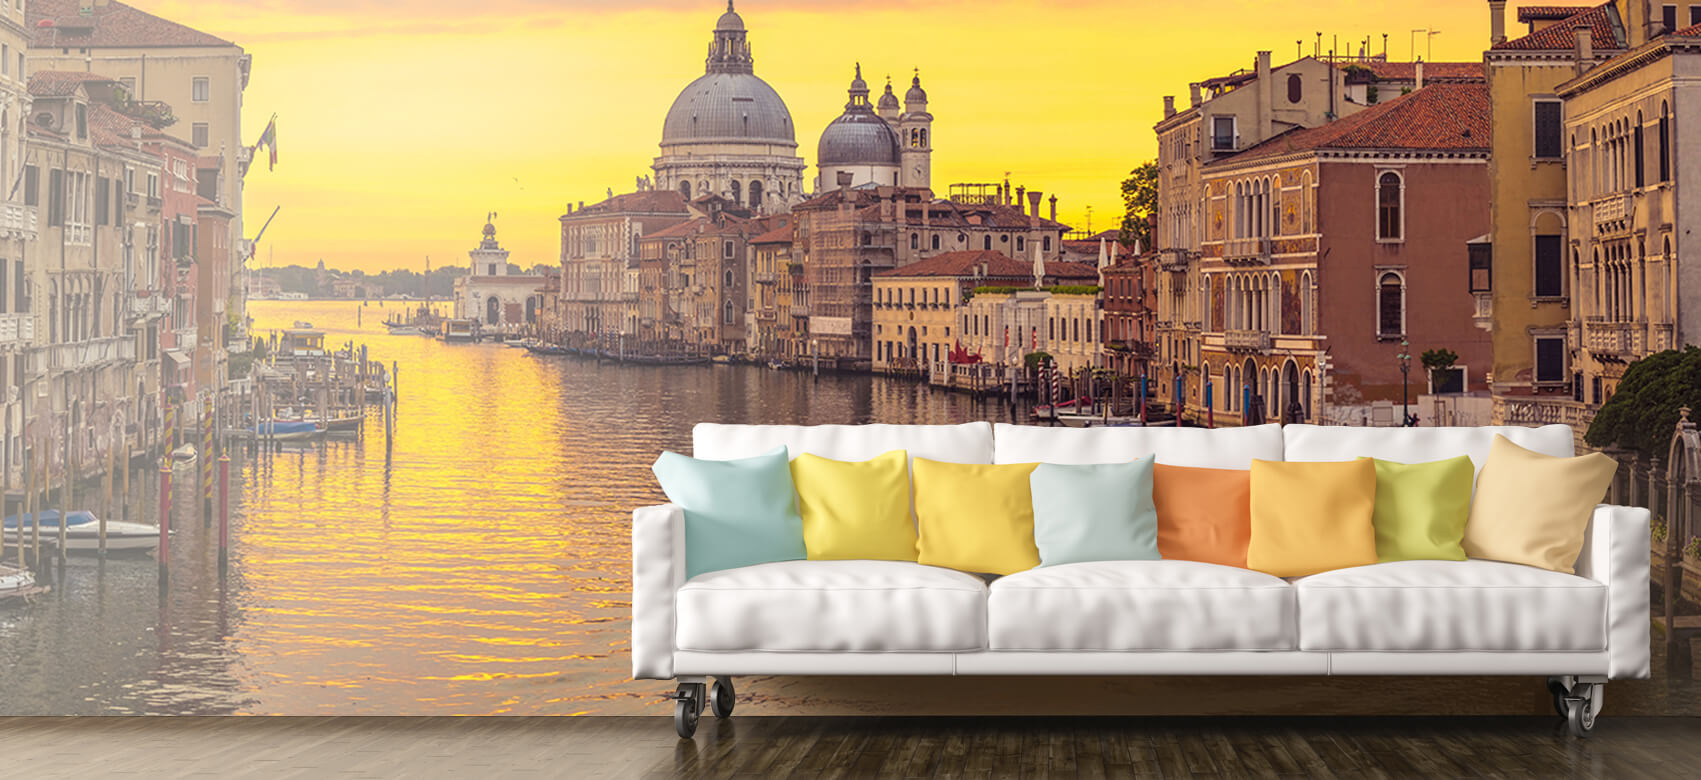 Ciudades - Papel pintado con Canal en Venecia - Salón 10